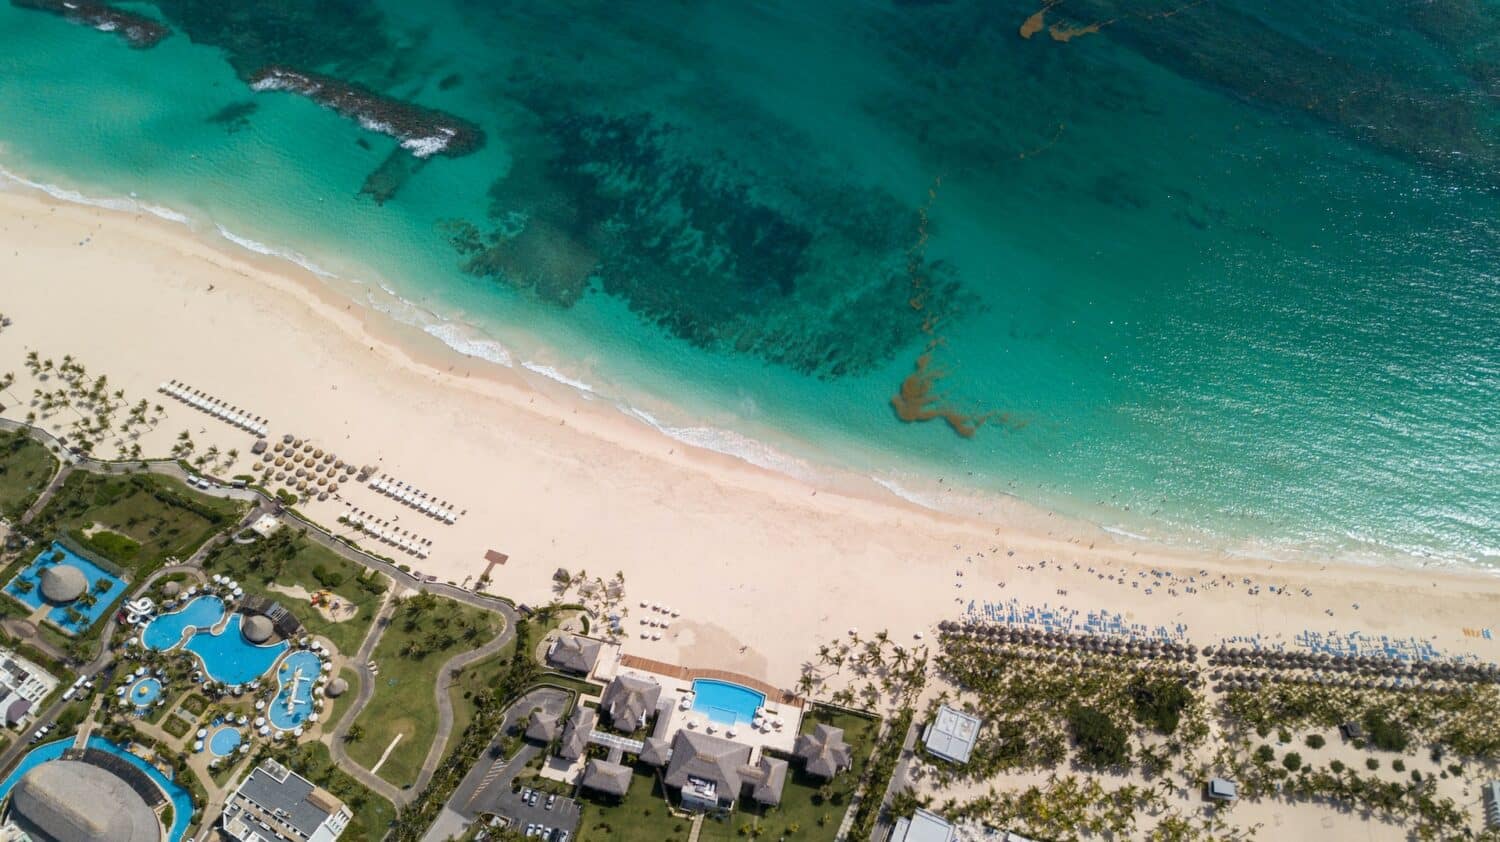 Vista aérea da área em que o Hard Rock Hotel & Casino Punta Cana encontra a Praia de Macao. Na base da imagem fica o hotel, que tem grandes piscinas, várias espreguiçadeiras e coqueiros. No topo fica a praia de areias claras e mar cristalino. - Foto: Danny de Groot via Unsplash